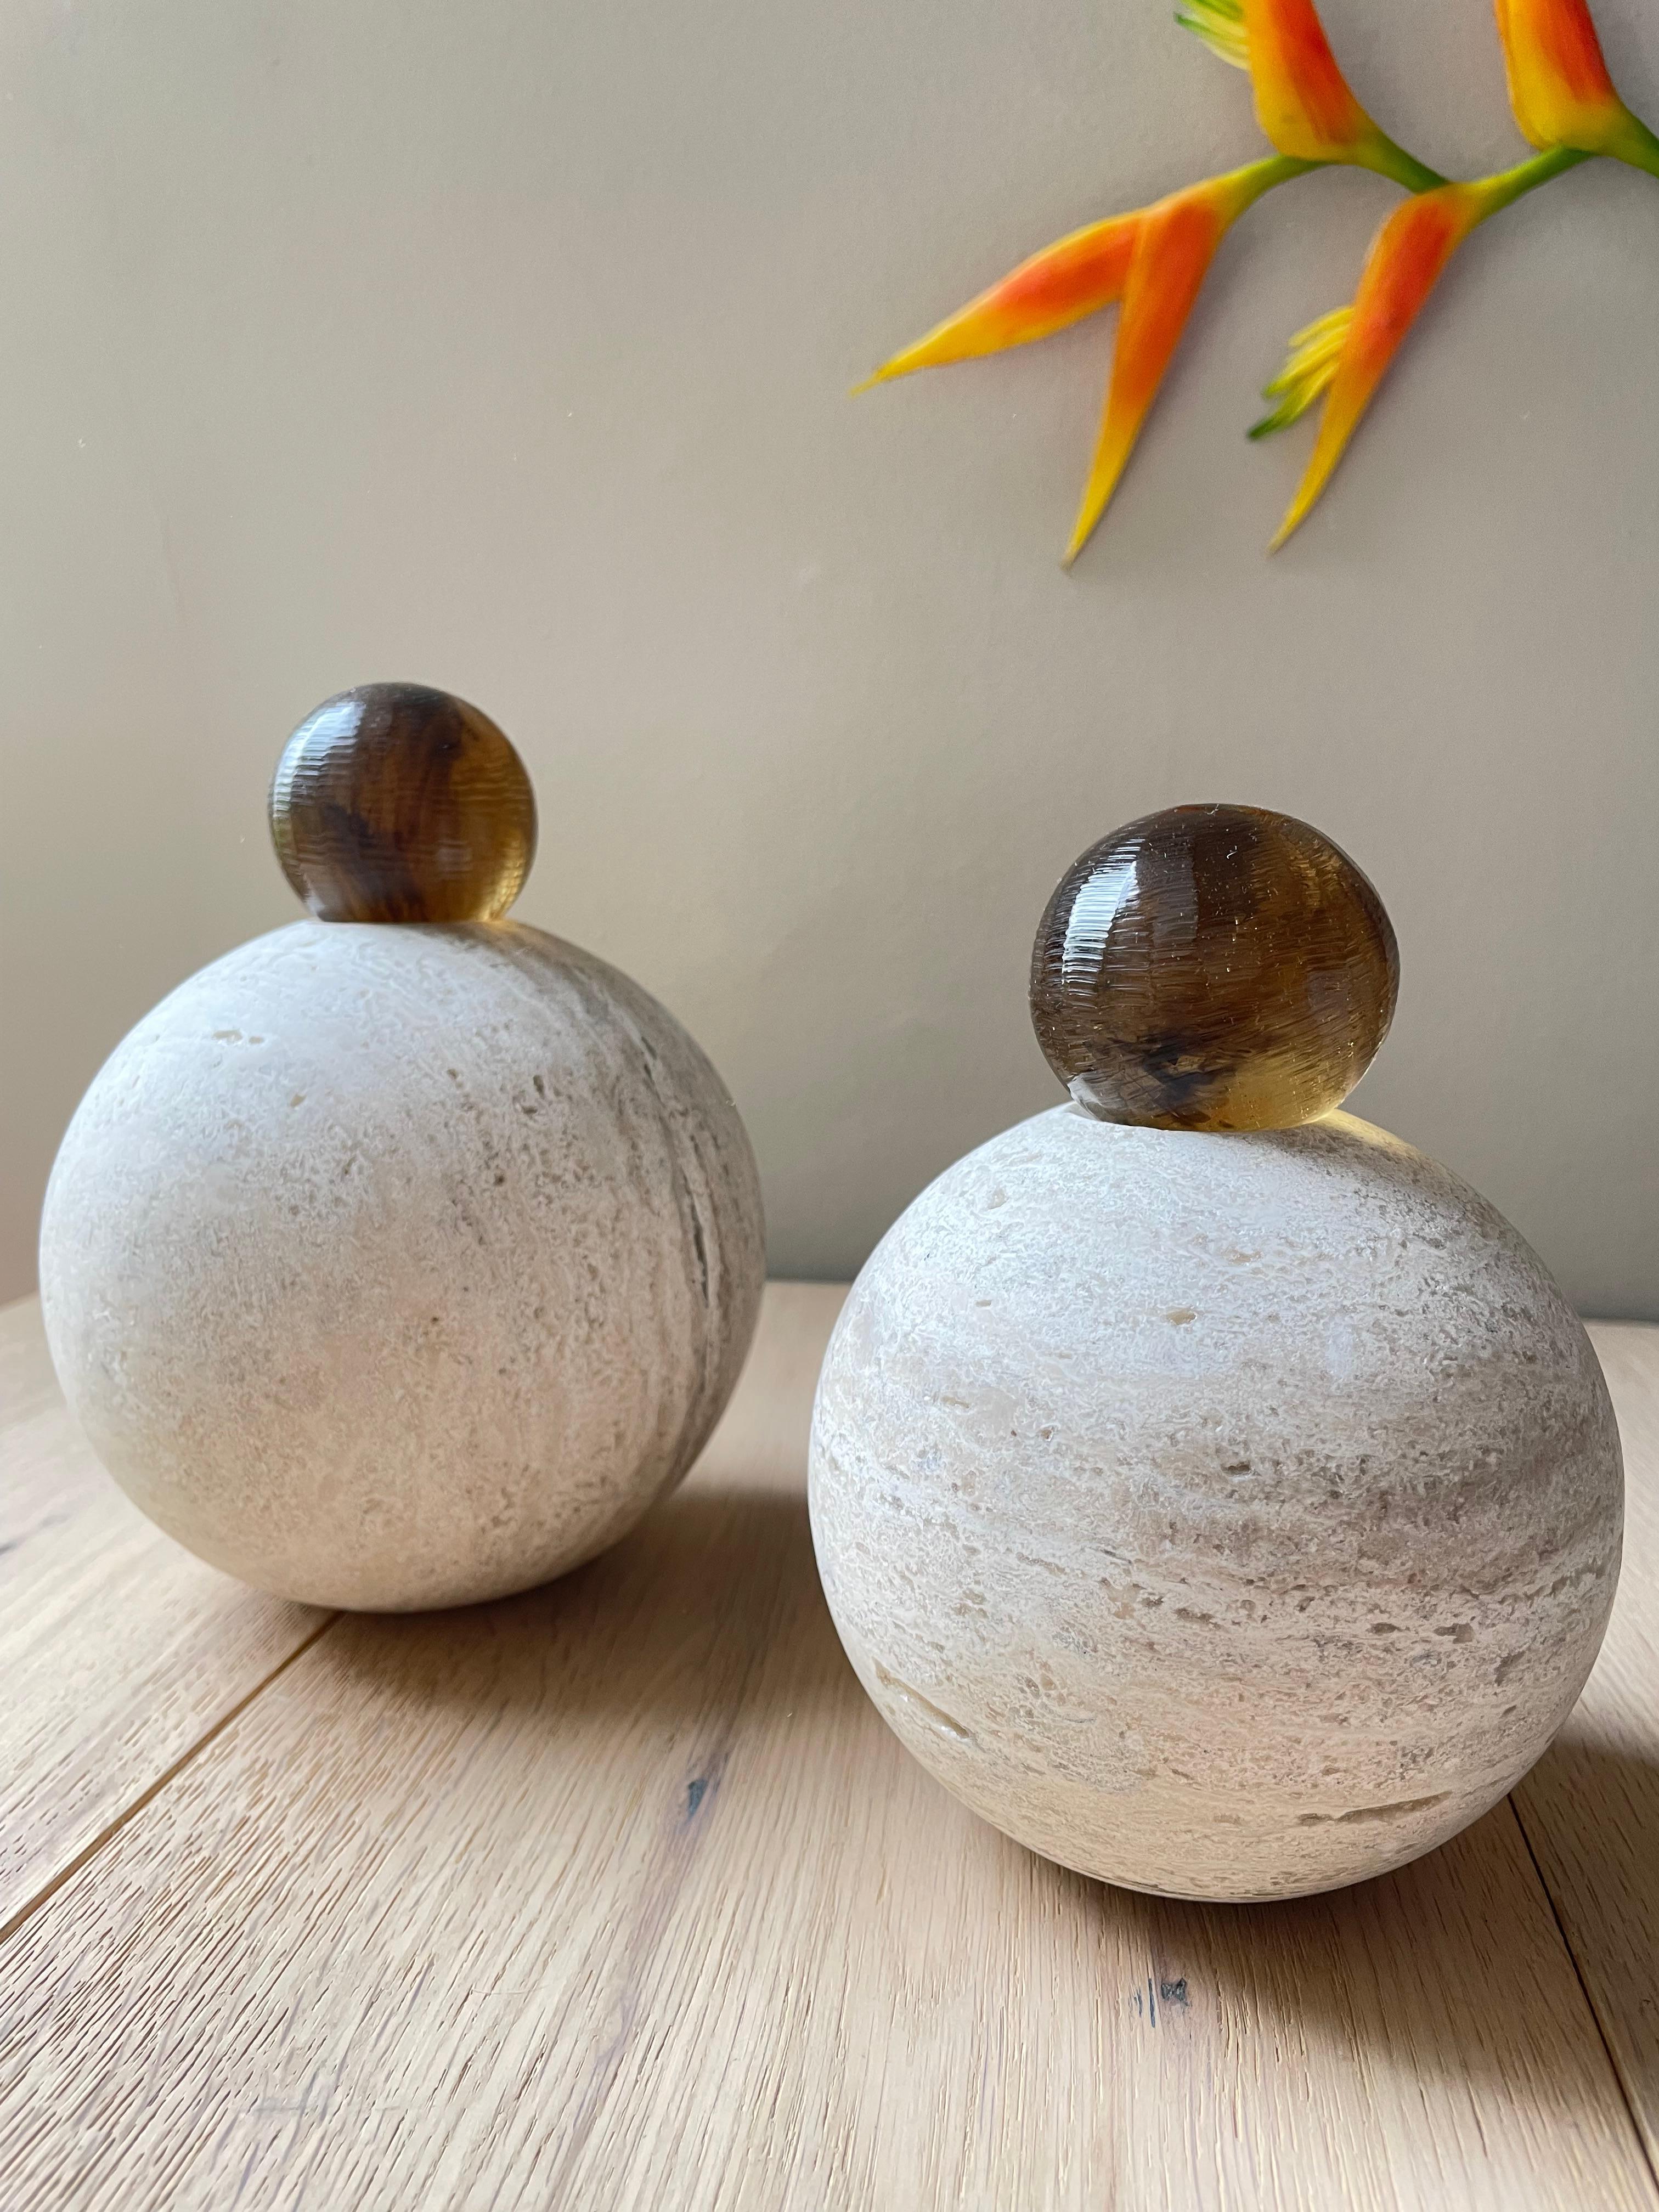 Nos sculptures de sphères empilées peuvent être utilisées comme élément décoratif sur une table basse, une étagère, une console, etc. Leur teinte chaude et leurs lignes courbes ajoutent la bonne quantité d'intérêt visuel sans surcharger le décor